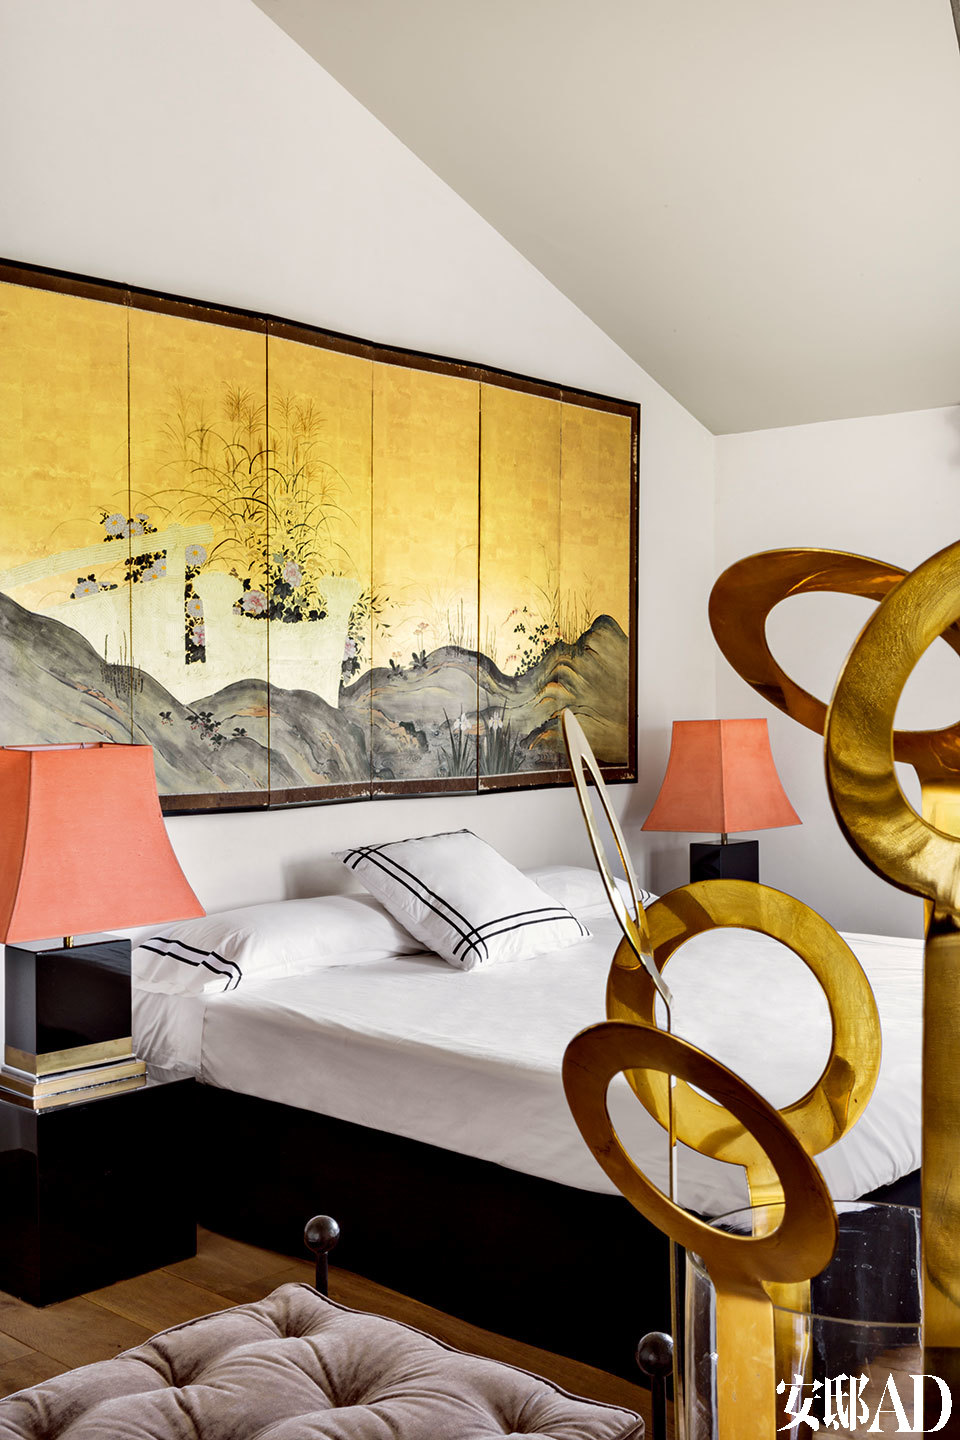 日本古董灯、 金色花瓶与床头画作相呼应，令满室璀璨金光得以提升。次卧的床头柜上，摆放着赛尔莲∙卡斯特拉挑选的1970年代的古董日本灯，而金色花瓶是在法国购买的，墙上的屏风壁画来自巴黎。